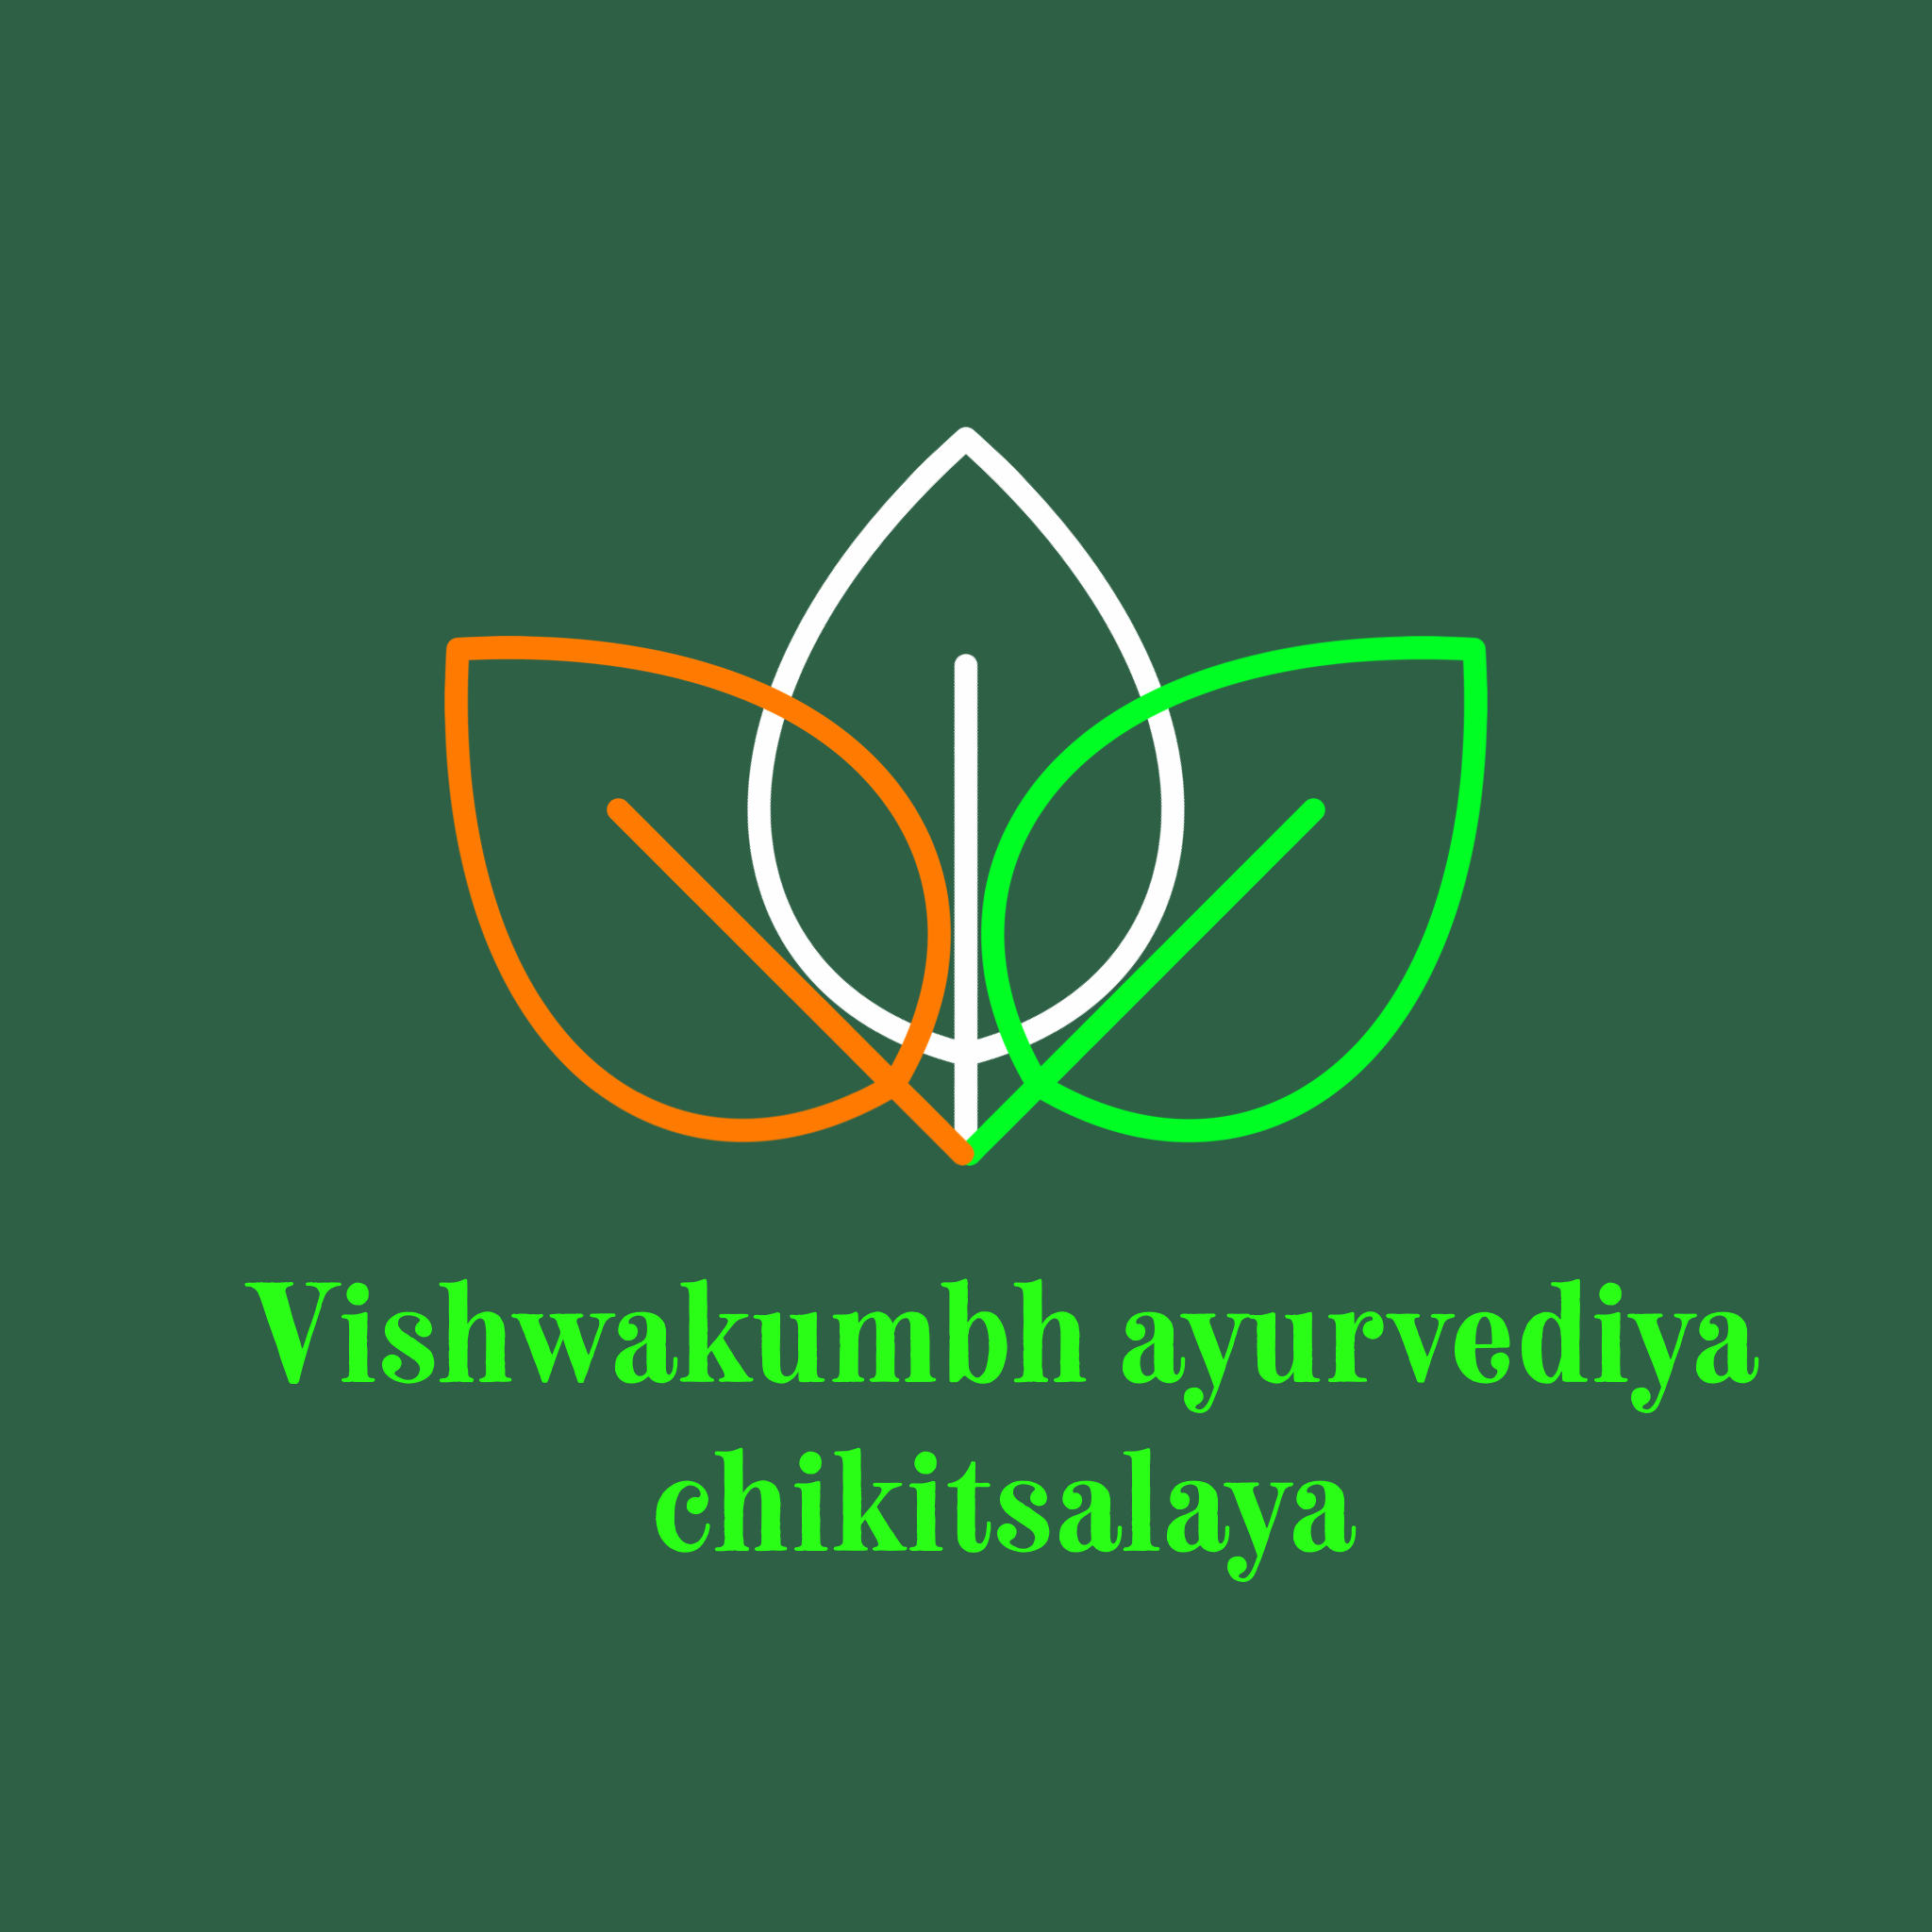 Vishwakumbh ayurvediya chikitsalaya